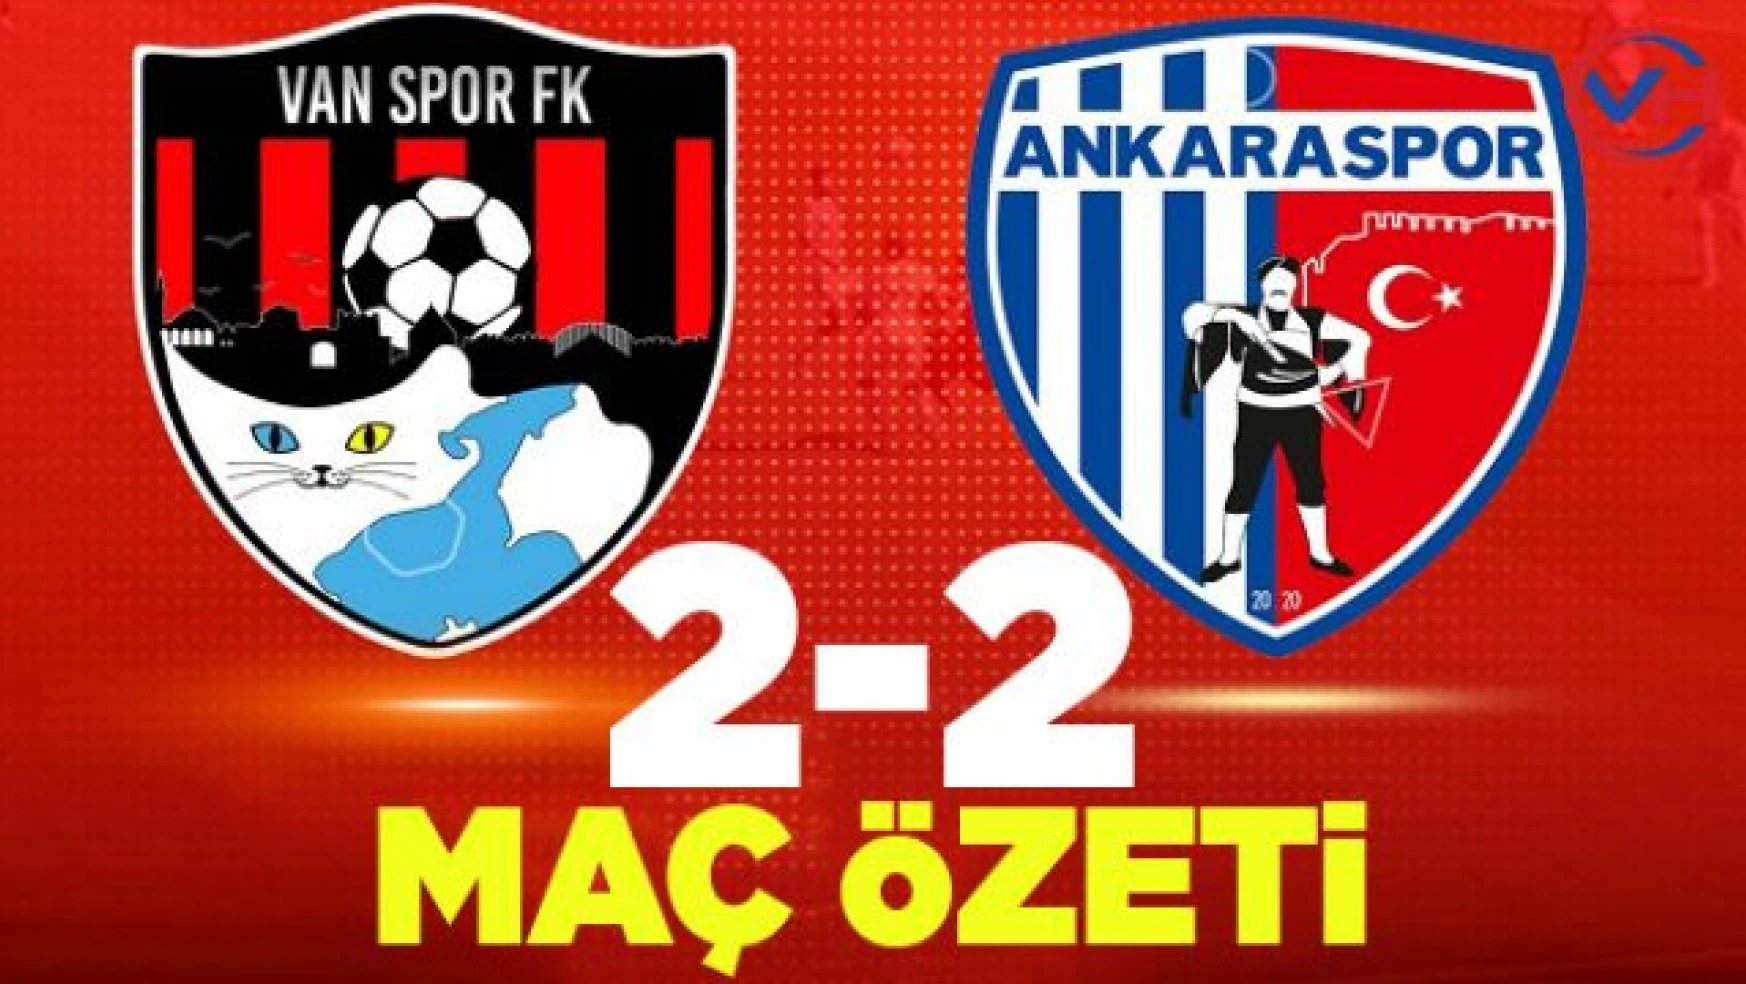 Vanspor FK 2-2 Ankaraspor maç özeti izle...